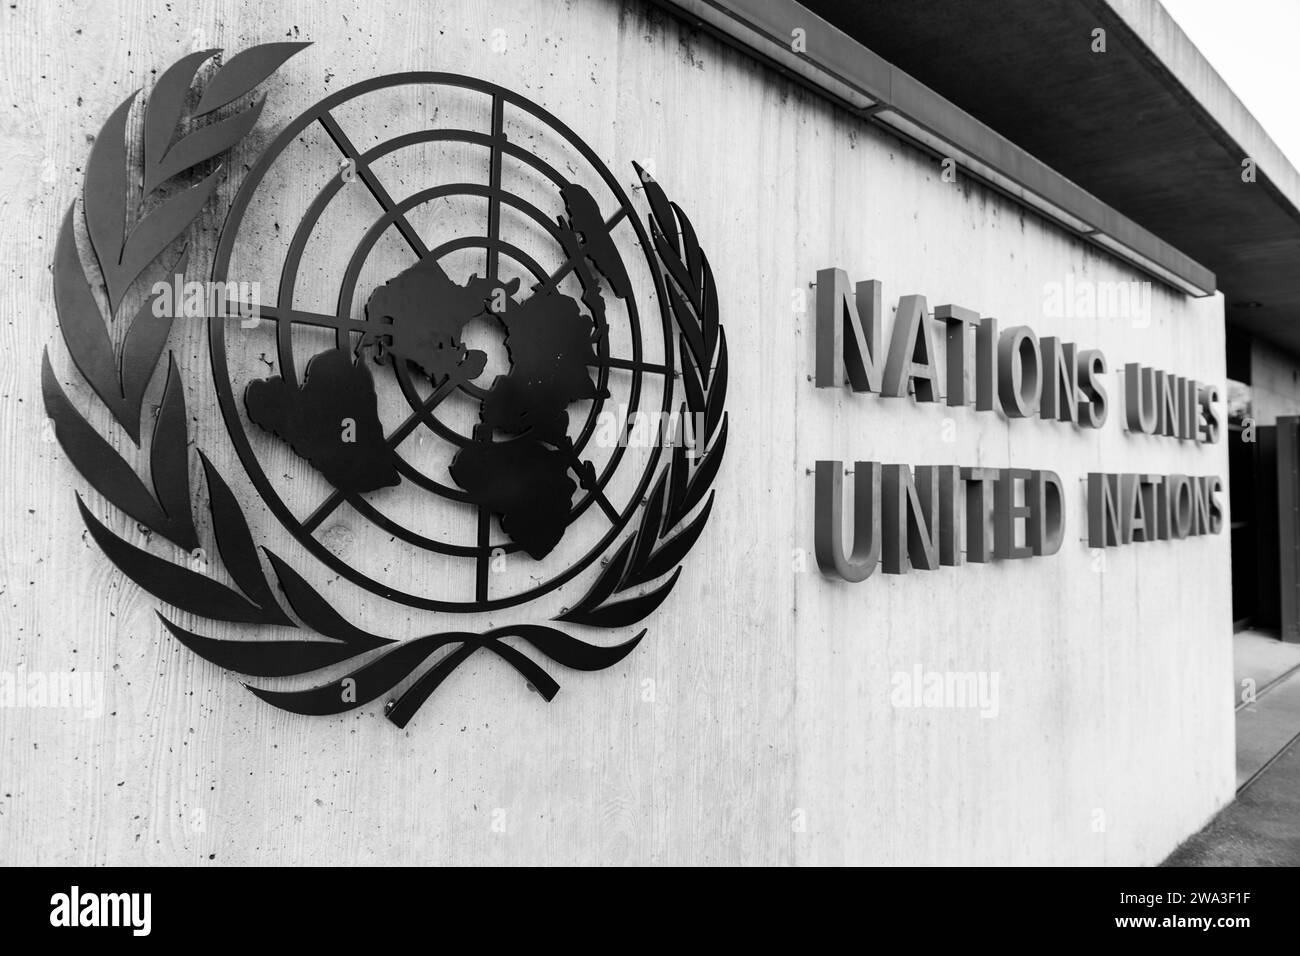 Ginevra, Svizzera - 25 marzo 2022: L'Ufficio delle Nazioni Unite a Ginevra, ospitato nello storico Palais des Nations, è il secondo centro delle Nazioni Unite per grandezza Foto Stock